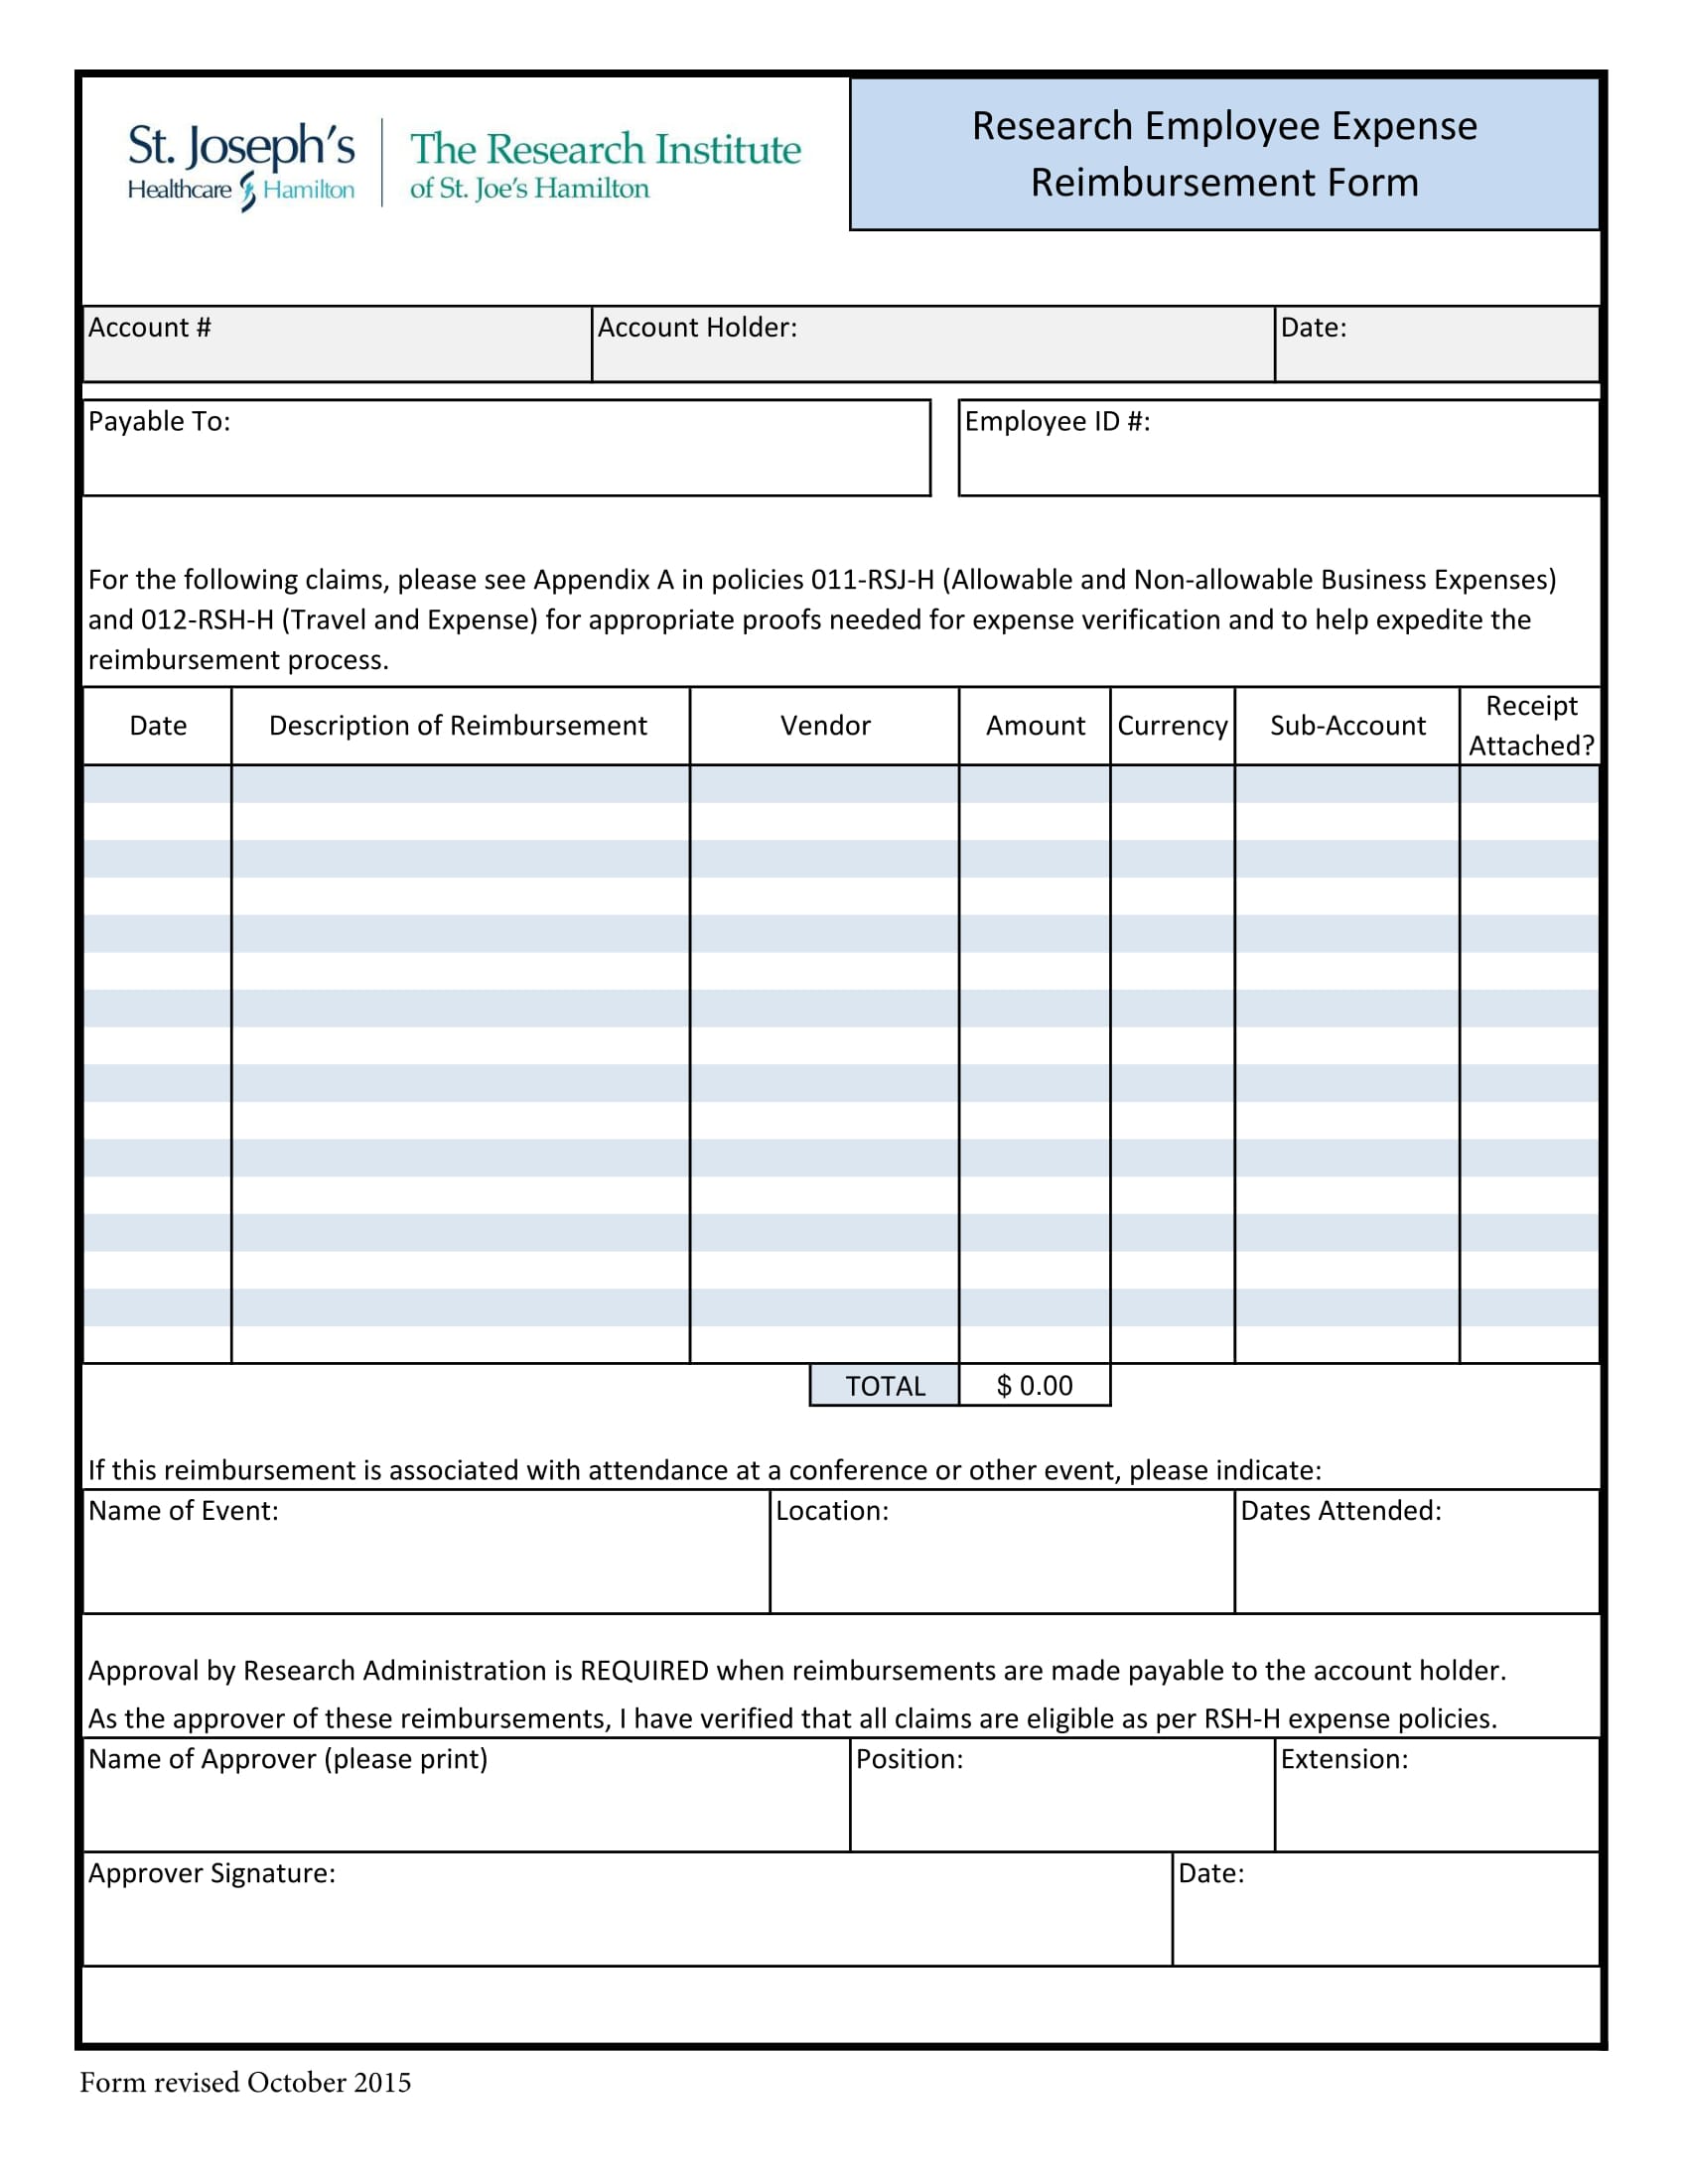 research employee expense reimbursement form 1